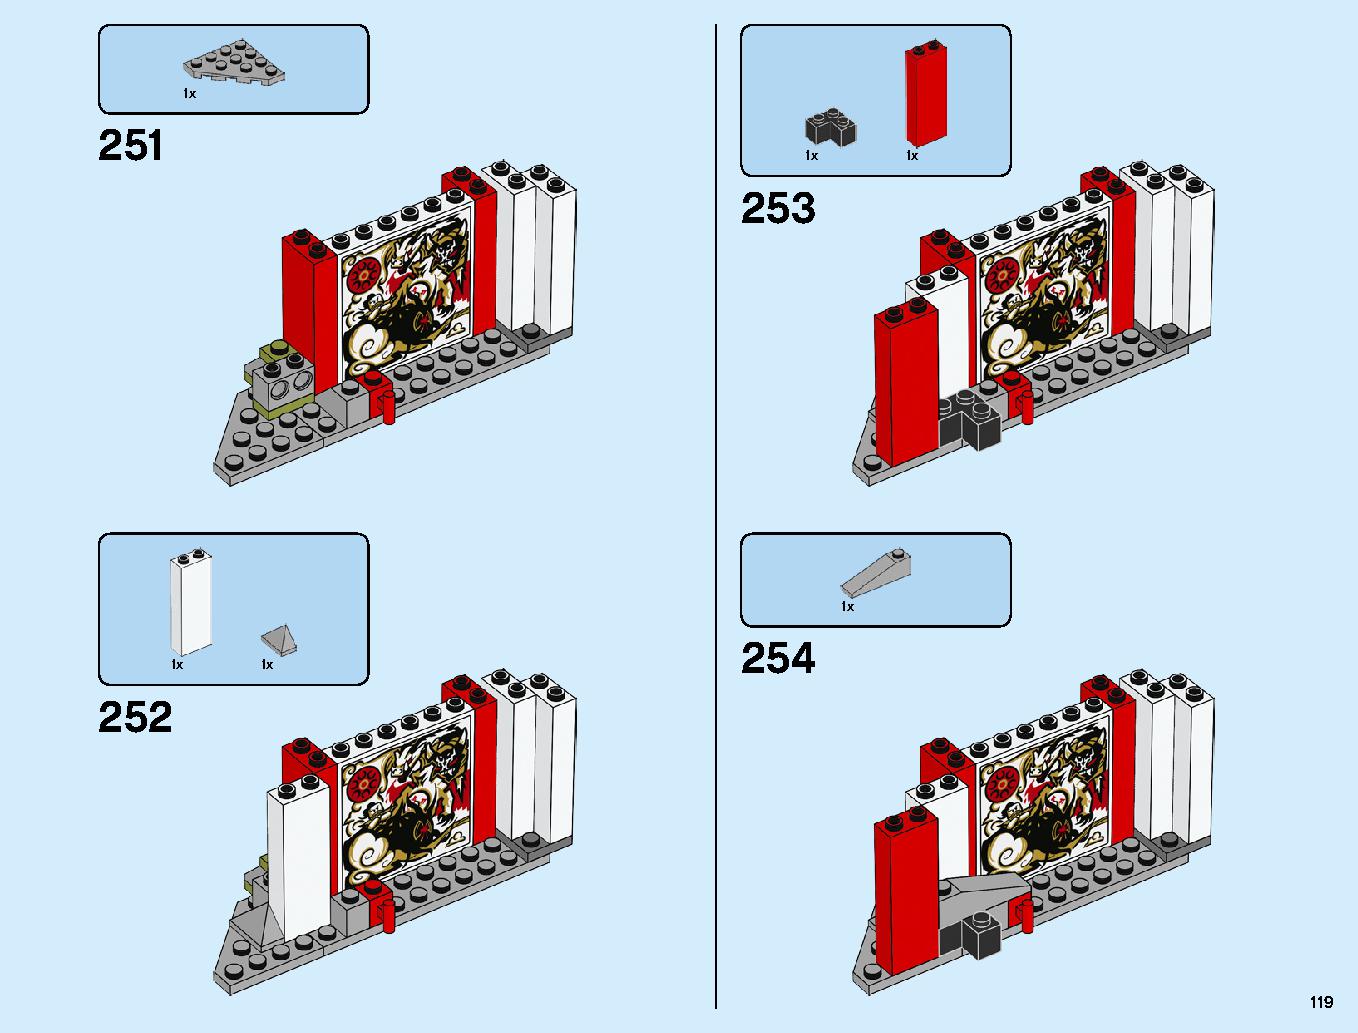 ニンジャ道場 70670 レゴの商品情報 レゴの説明書・組立方法 119 page